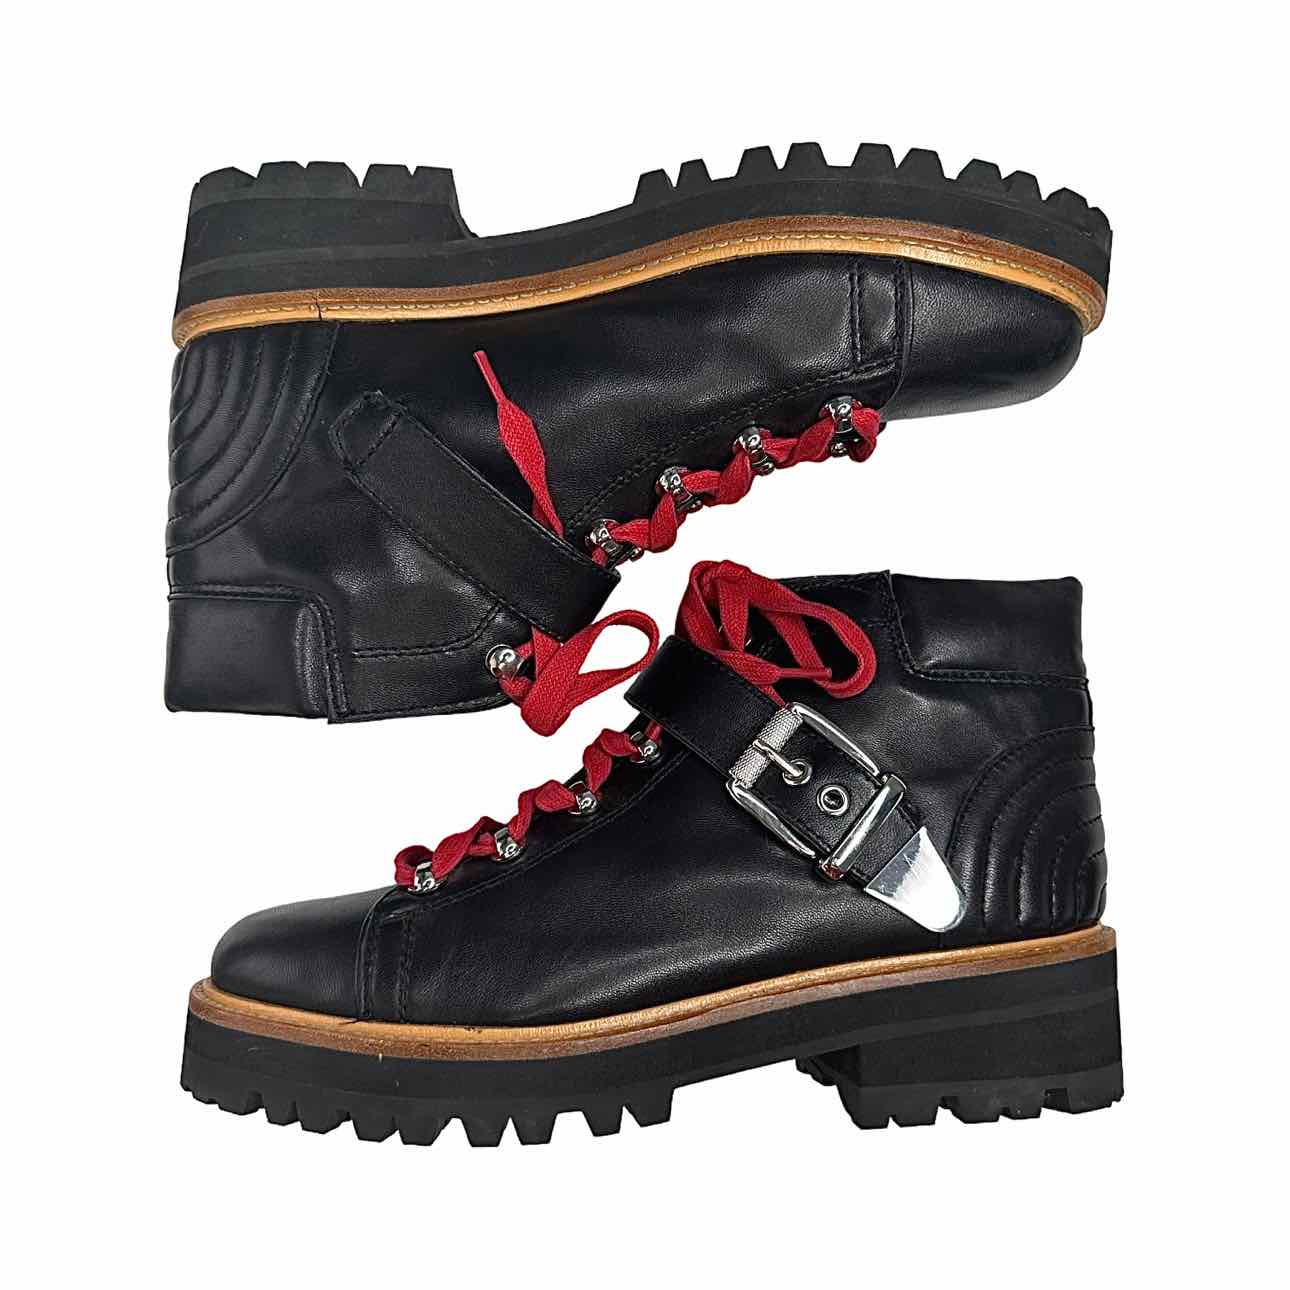 MARC FISHER LTD Indre Black Leather Platform Boot Size 9.5